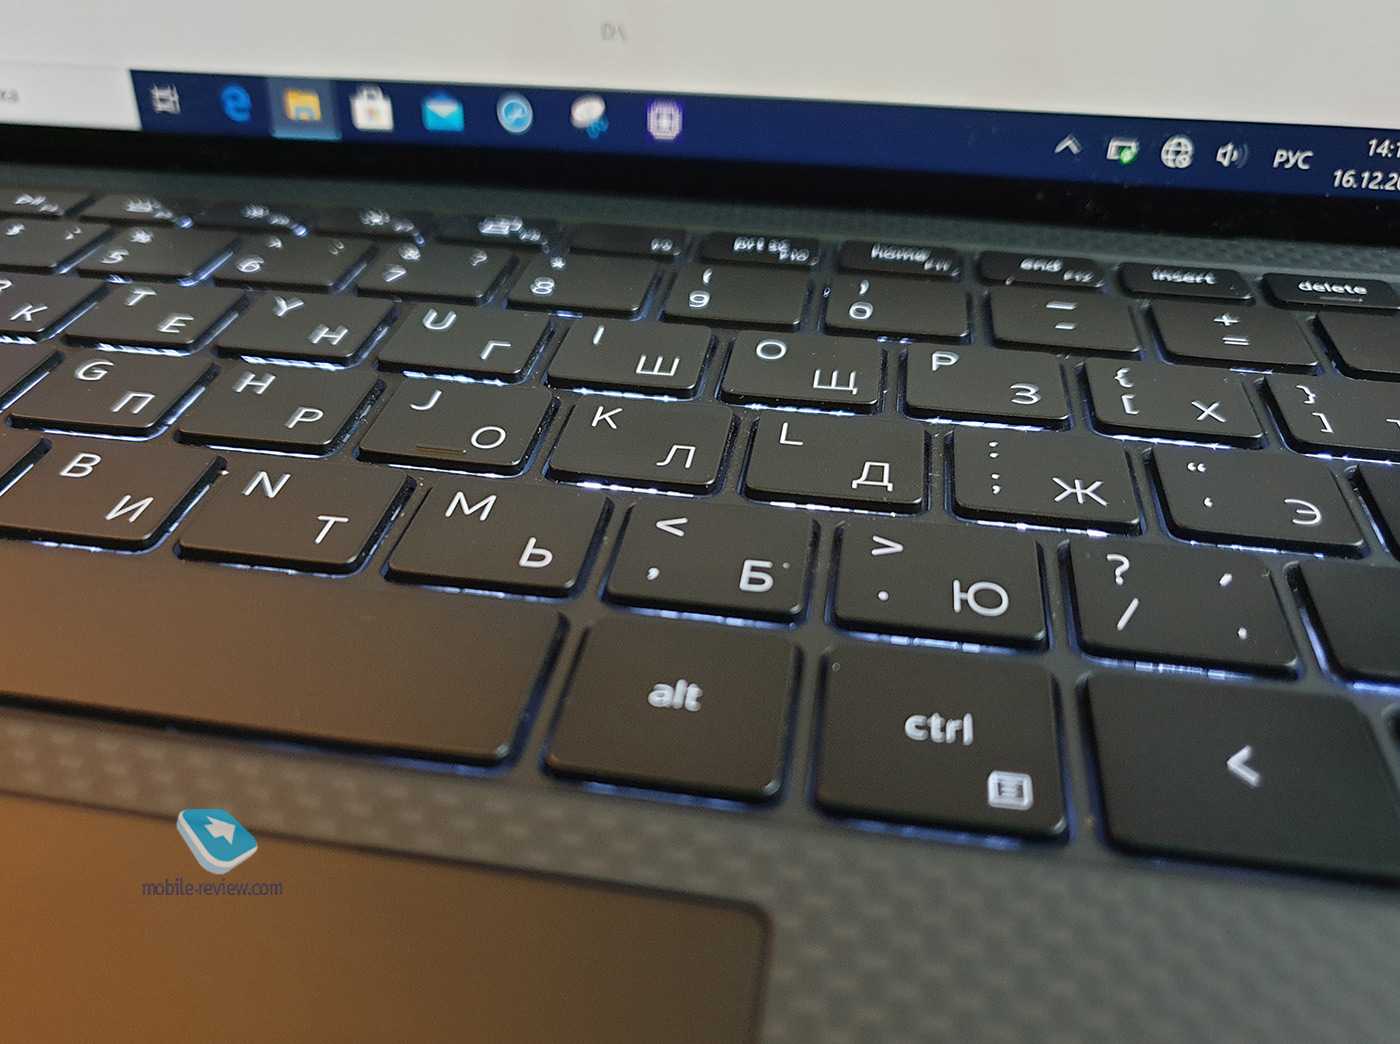 Dell xps 13 (2019) - один из лучших премиальных ультрабуков